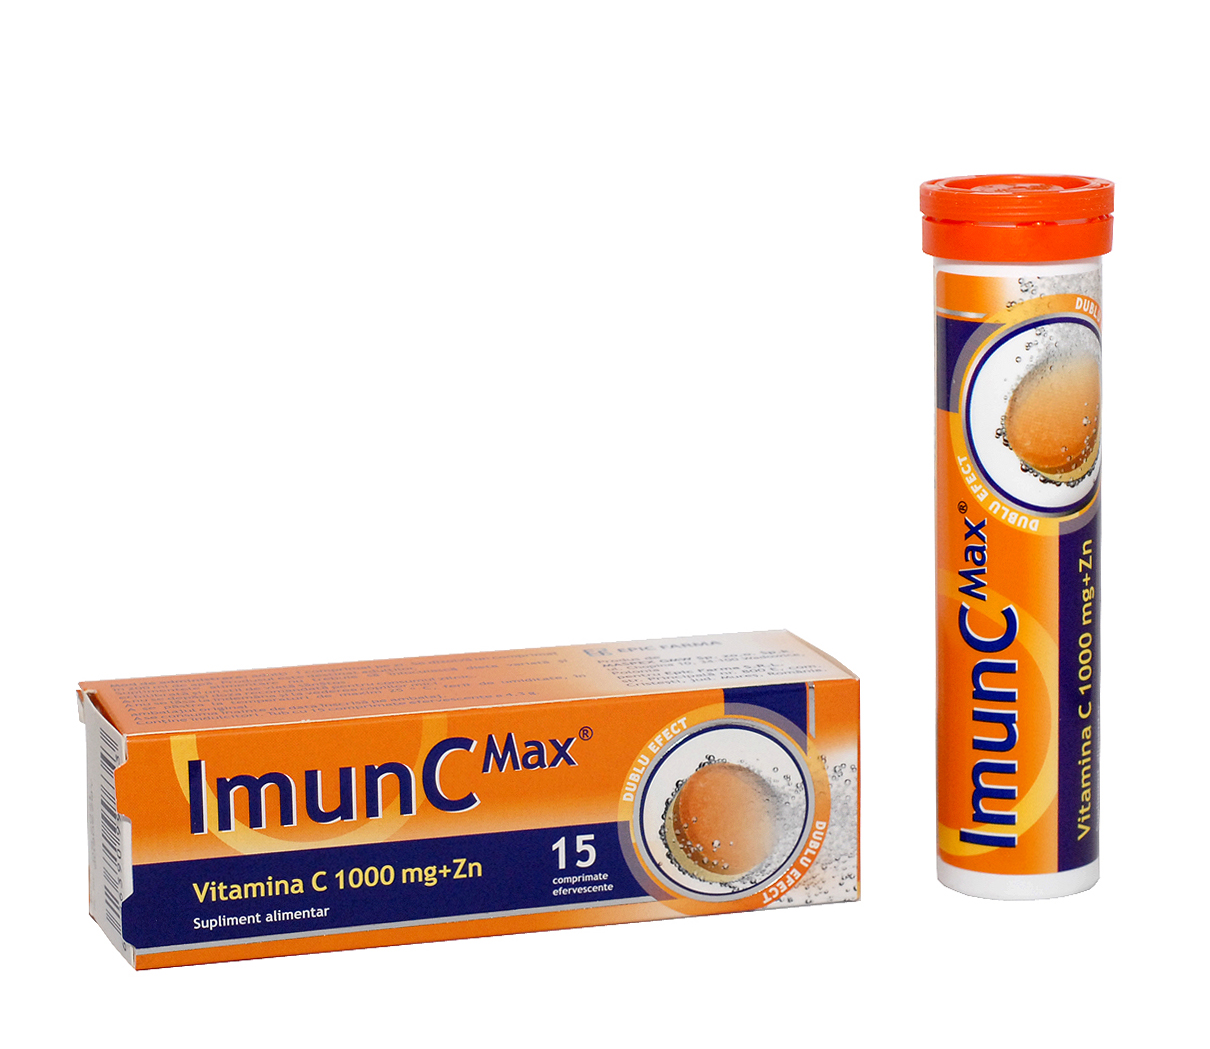 ImunC Max  (Vit C 1000mg + Zn), 15 comprimate efervescente, Maspex